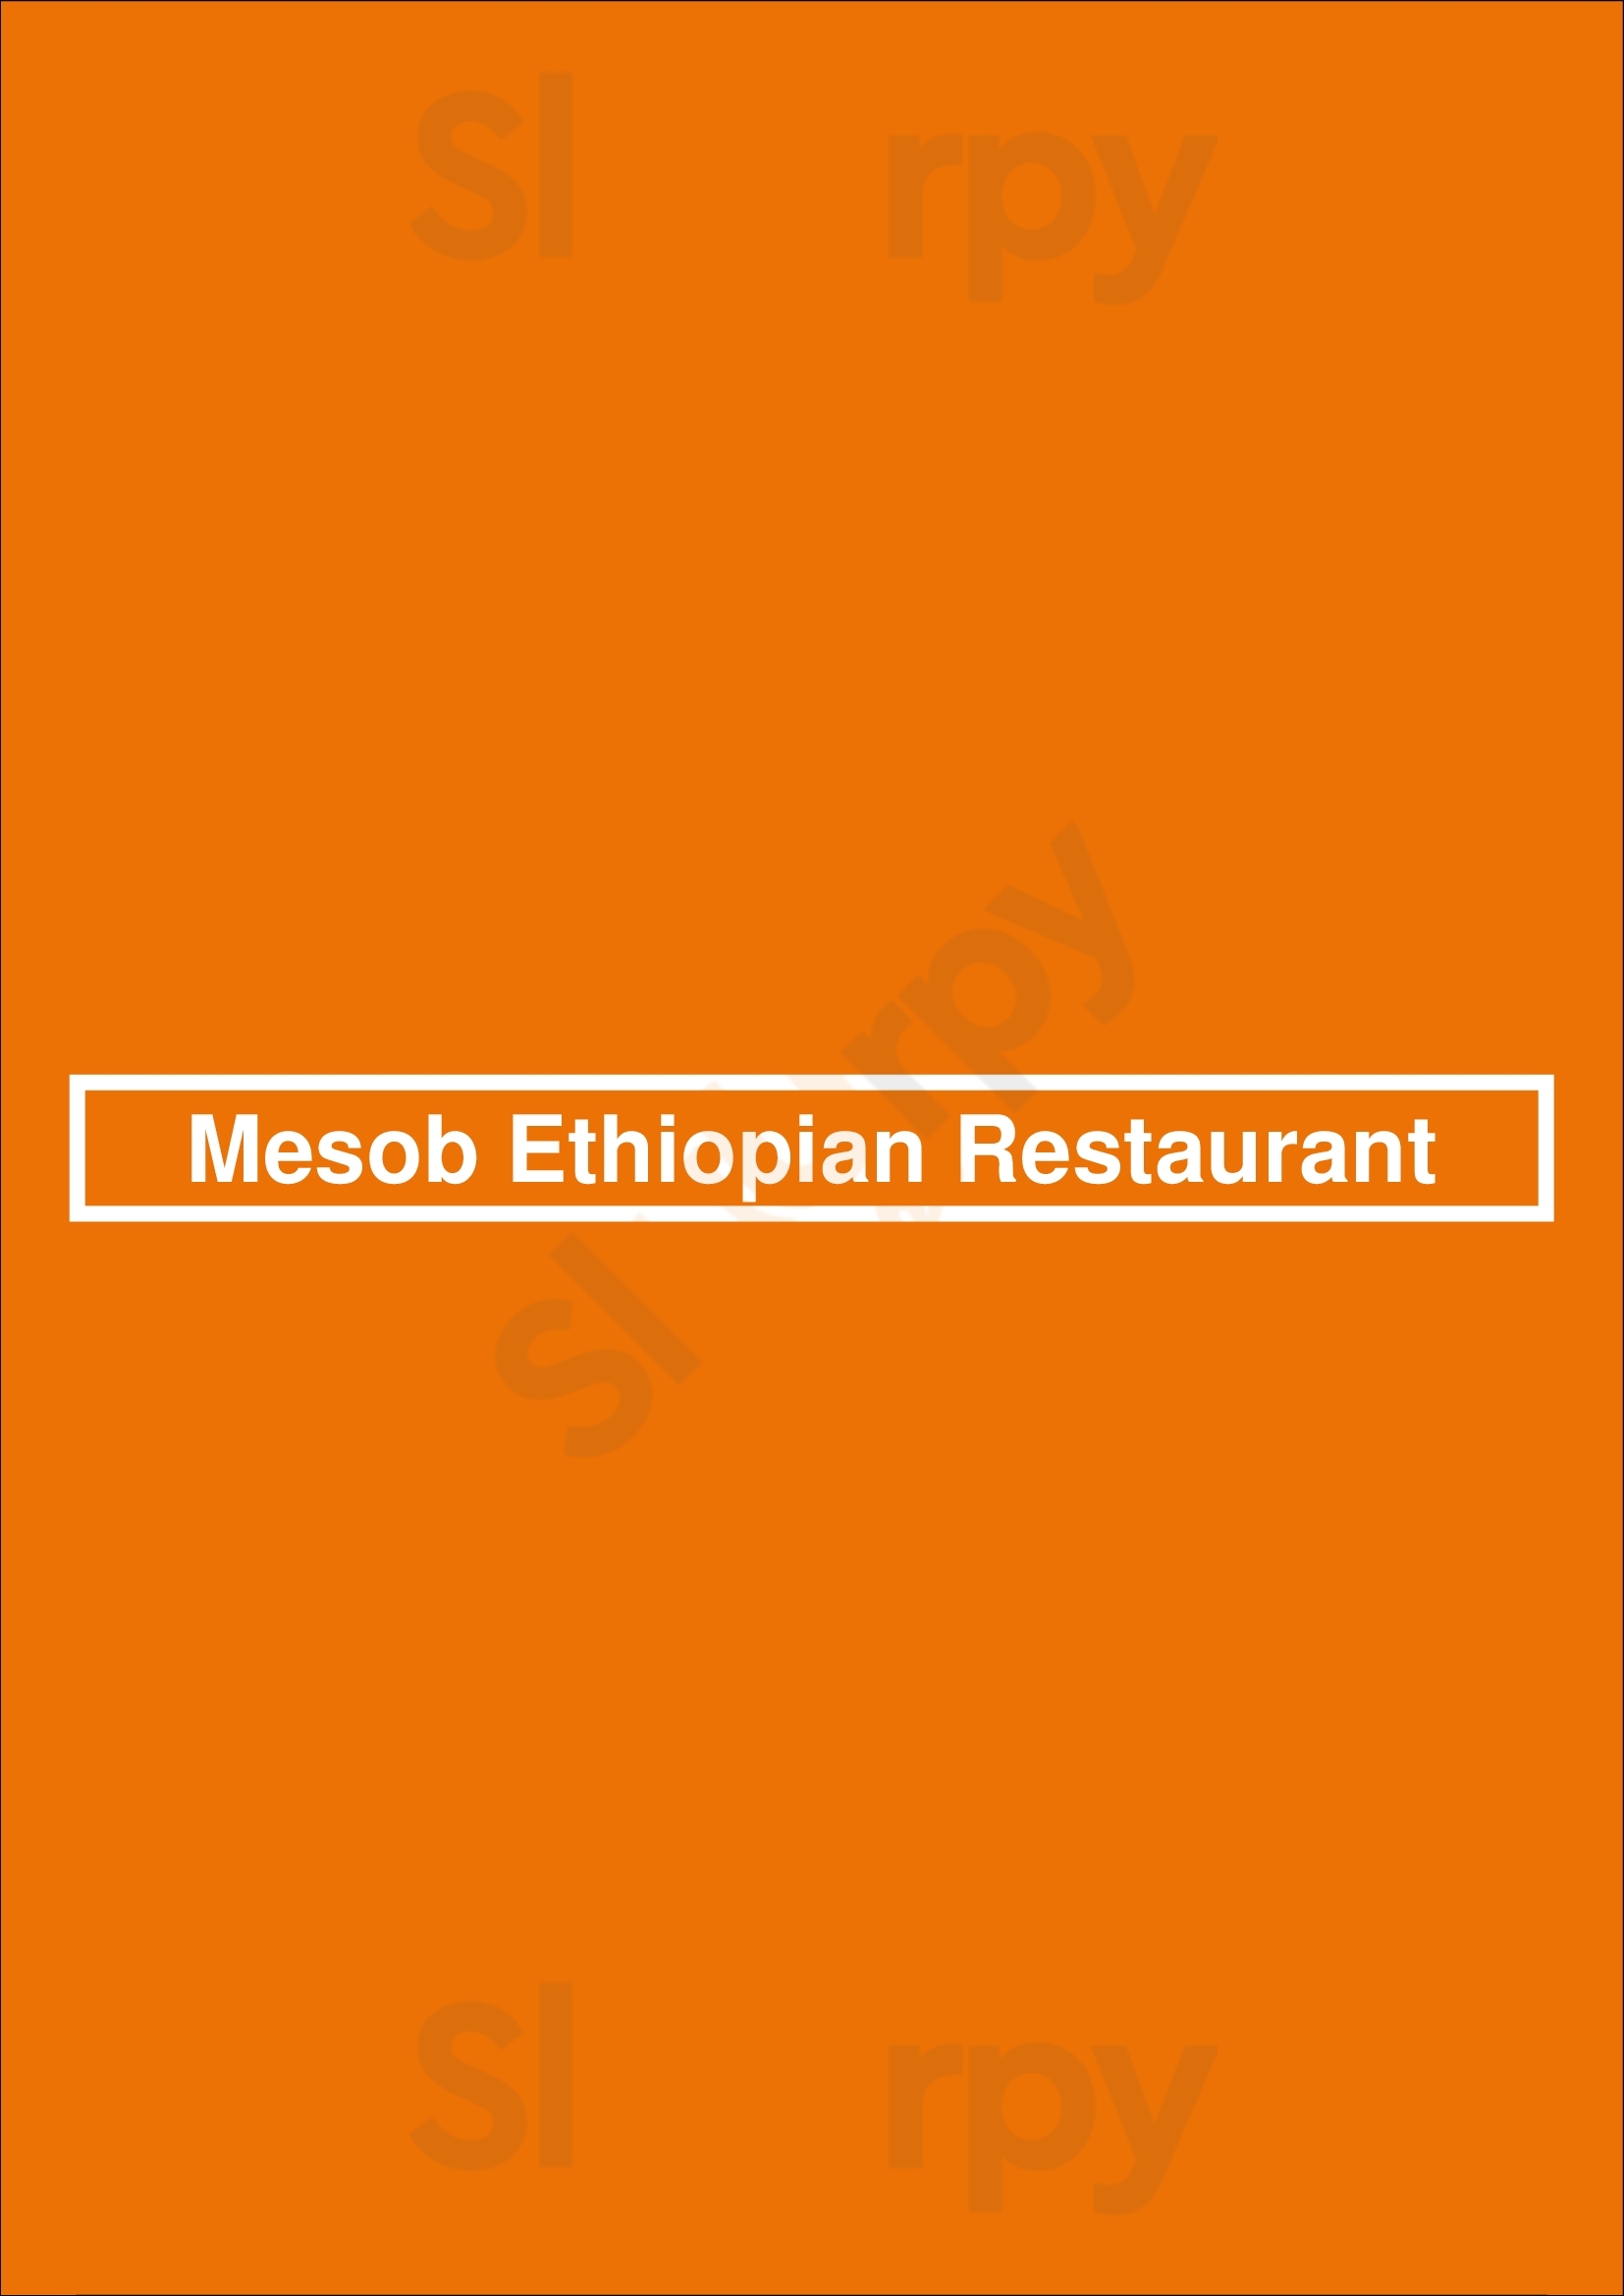 Mesob Ethiopian Restaurant Montclair Menu - 1